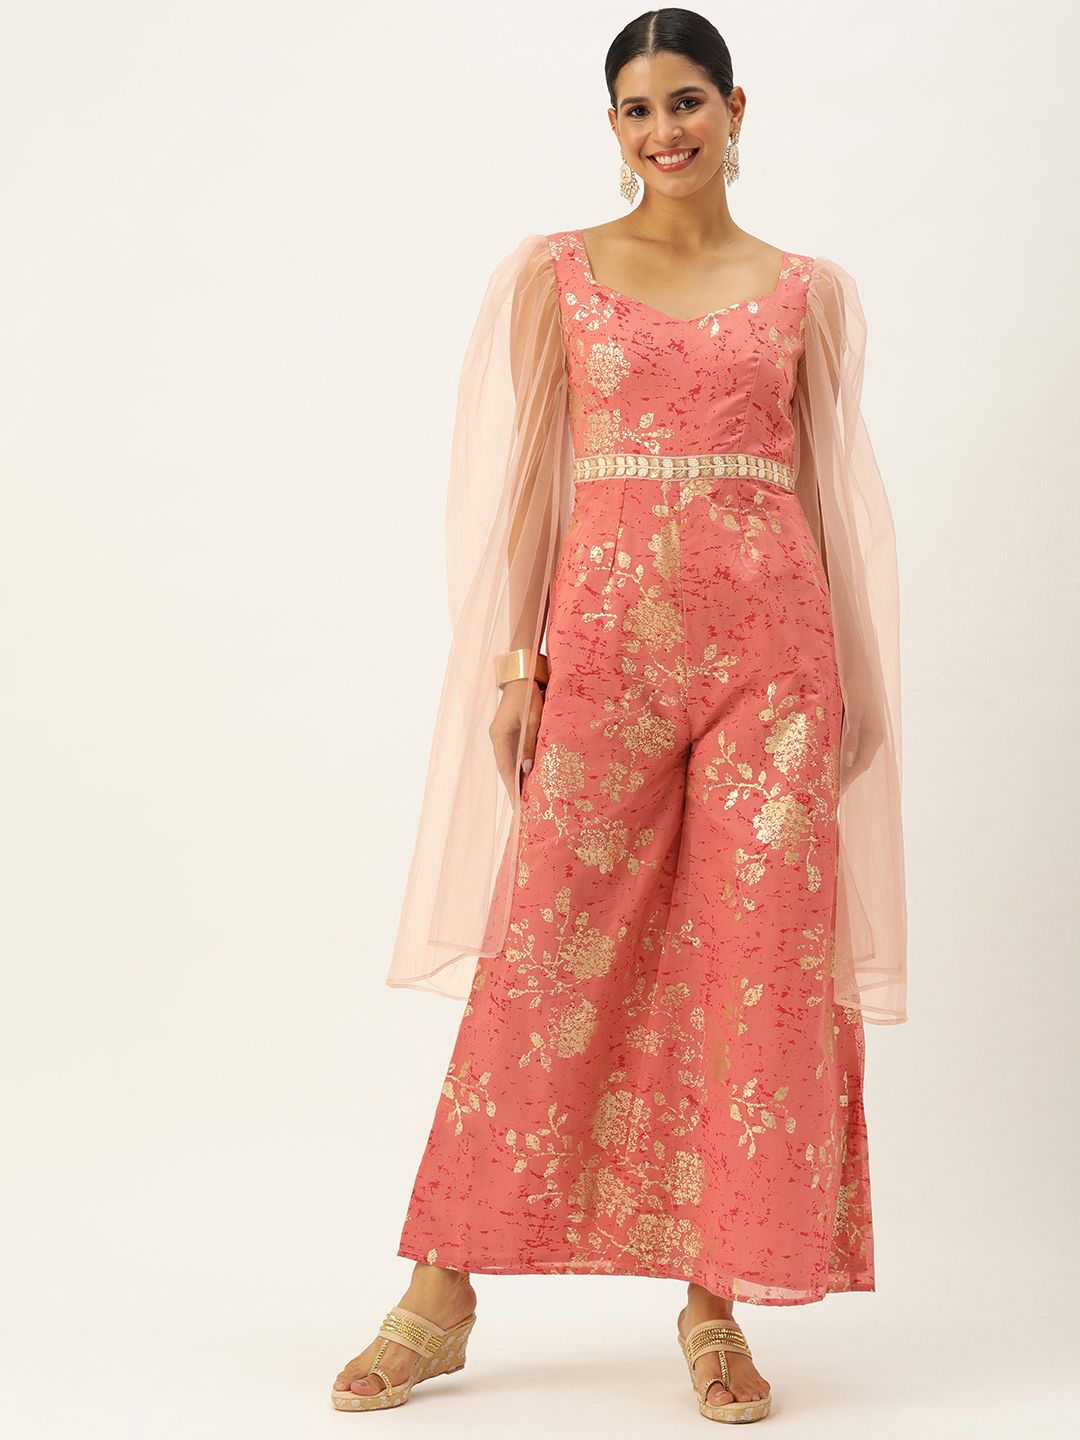 Ethnovog Foil Printed Sweetheart Neck Embellished Culotte Jumpsuit Price in India